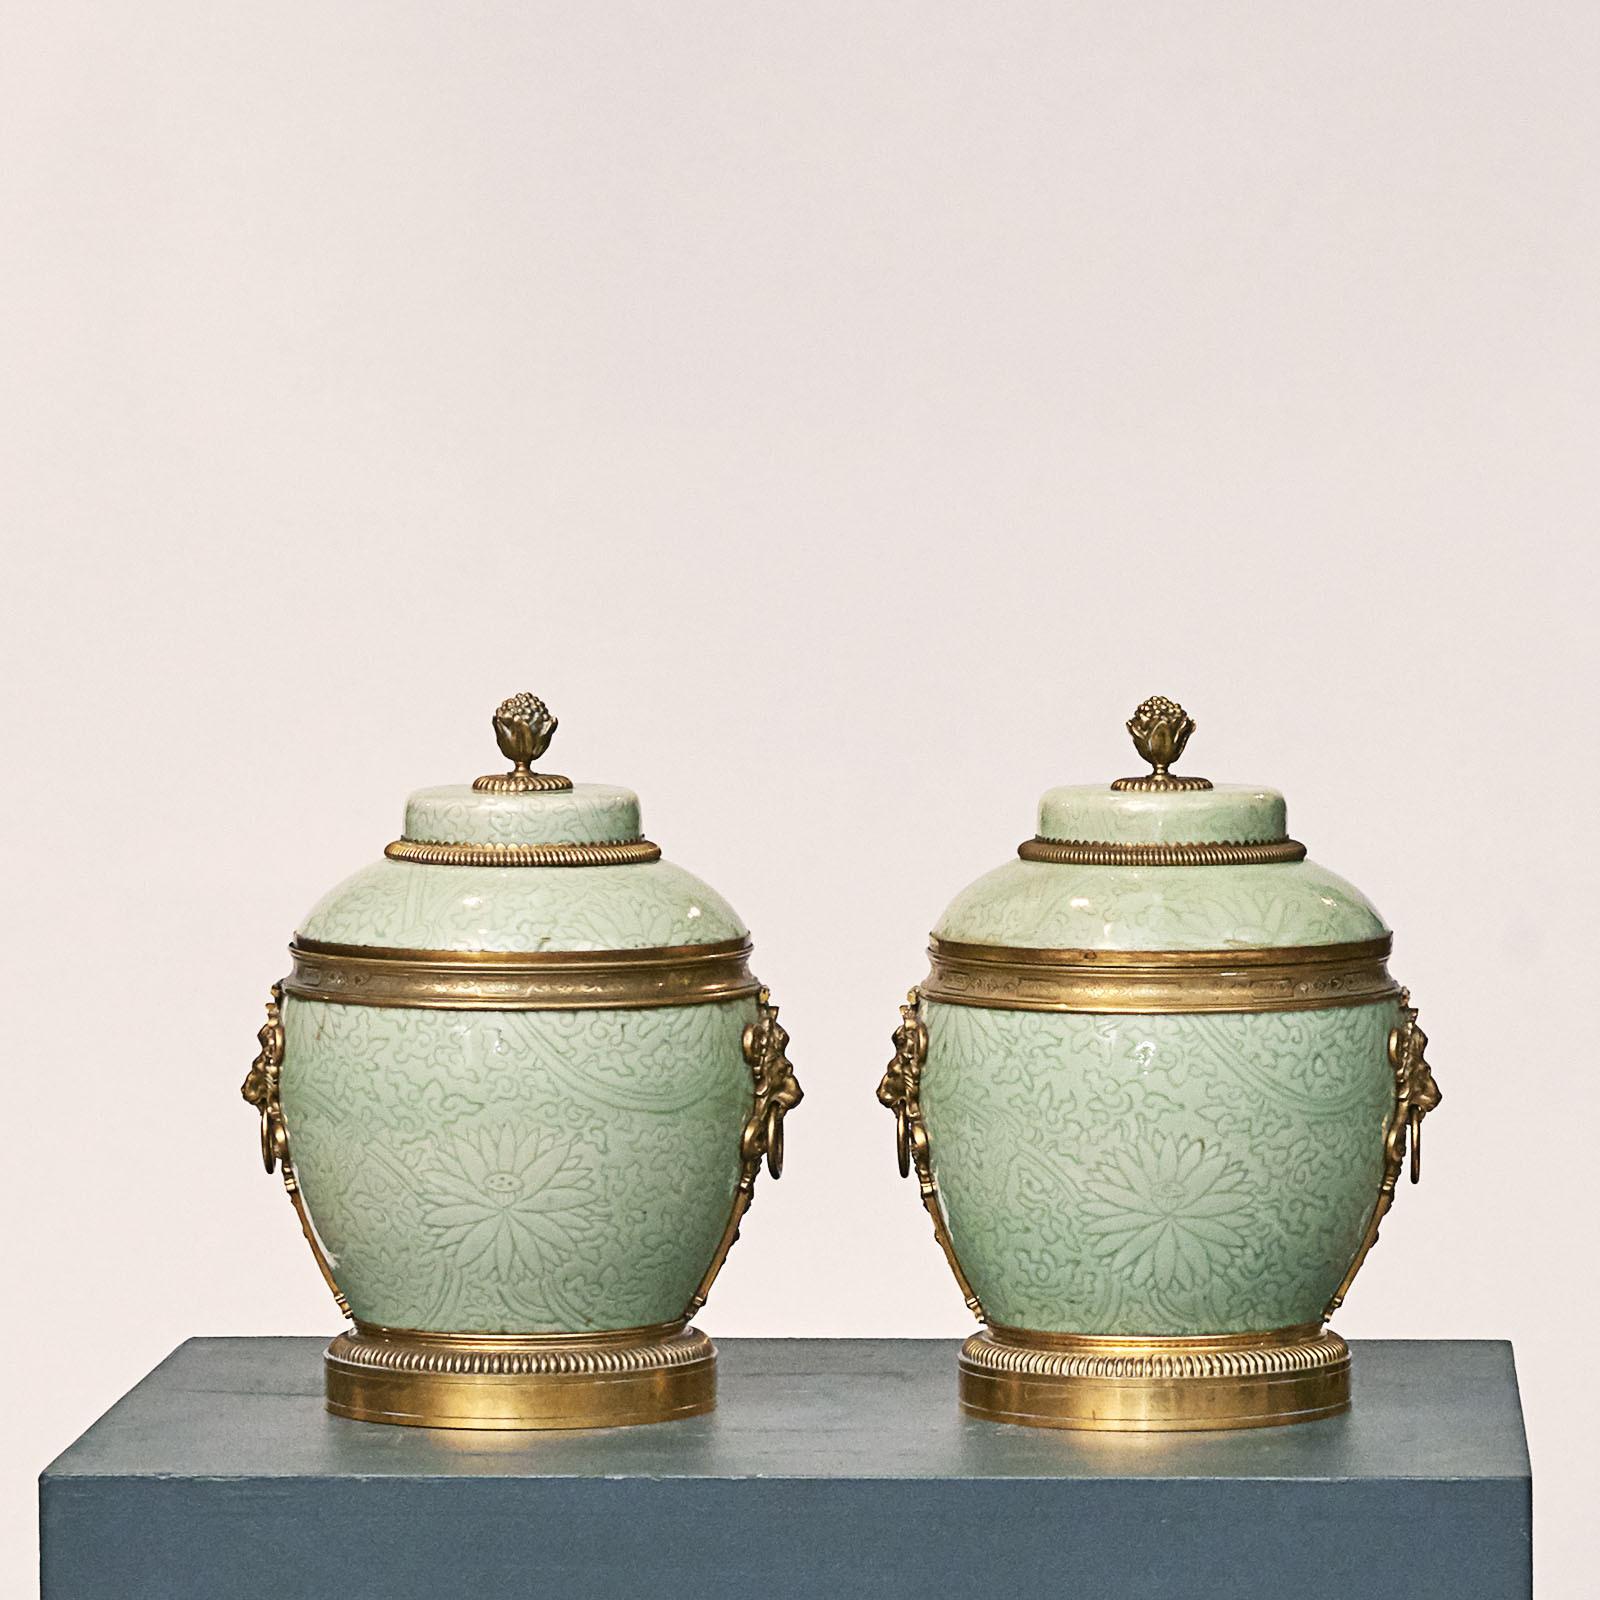 Zwei Deckelvasen aus vergoldeter Bronze, Qing-Dynastie, Kangxi (1662-1722), in der Art der Yuan-Dynastie, um 1720.
Jede türkisfarbene Deckelvase / Urne ist aus chinesischem glasiertem Porzellan gefertigt und verfügt über einen Ormolu-Knauf auf dem